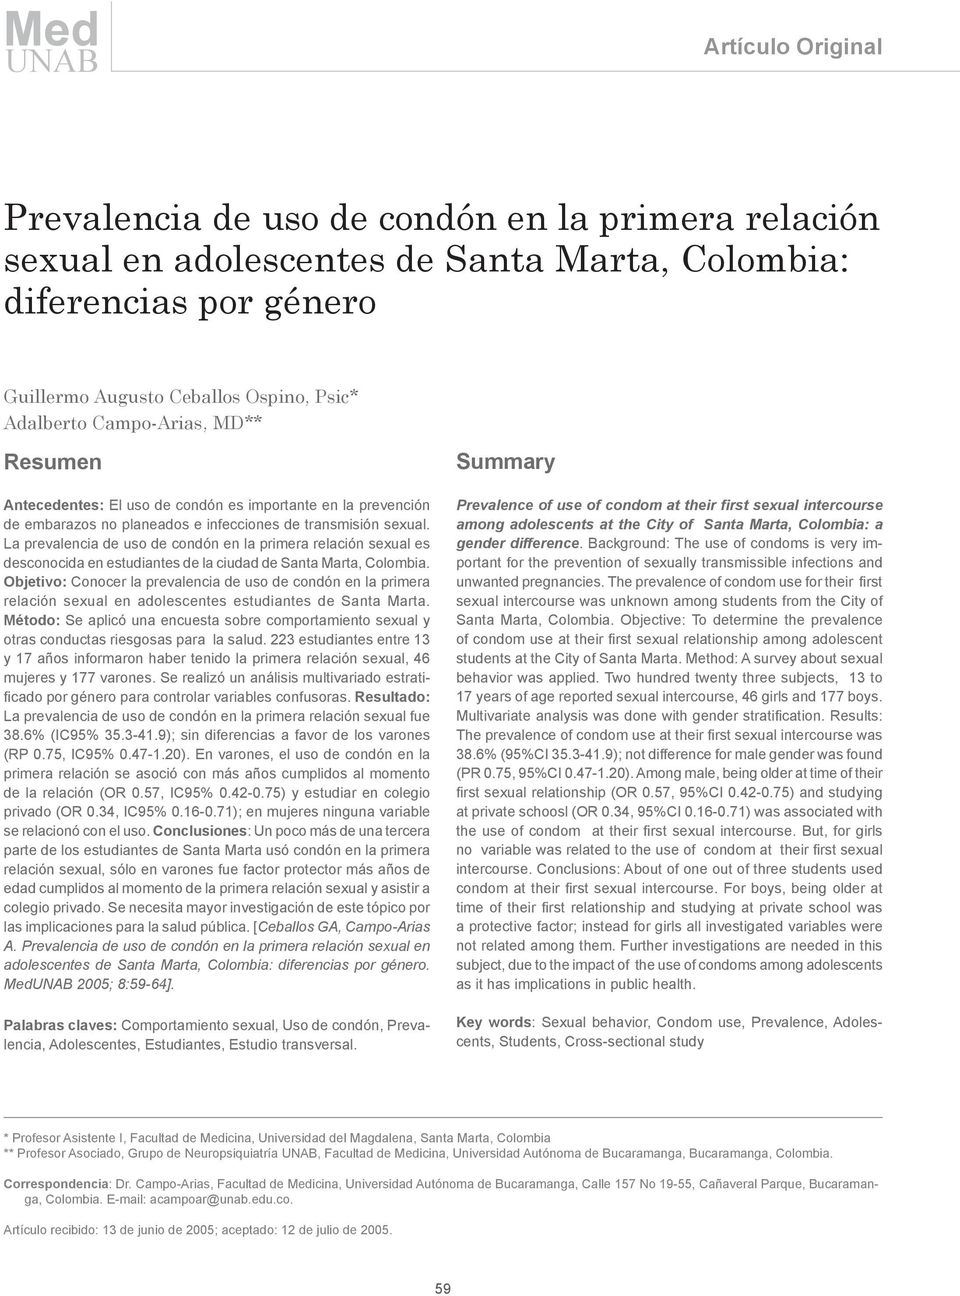 La prevalencia de uso de condón en la primera relación sexual es desconocida en estudiantes de la ciudad de Santa Marta, Colombia.